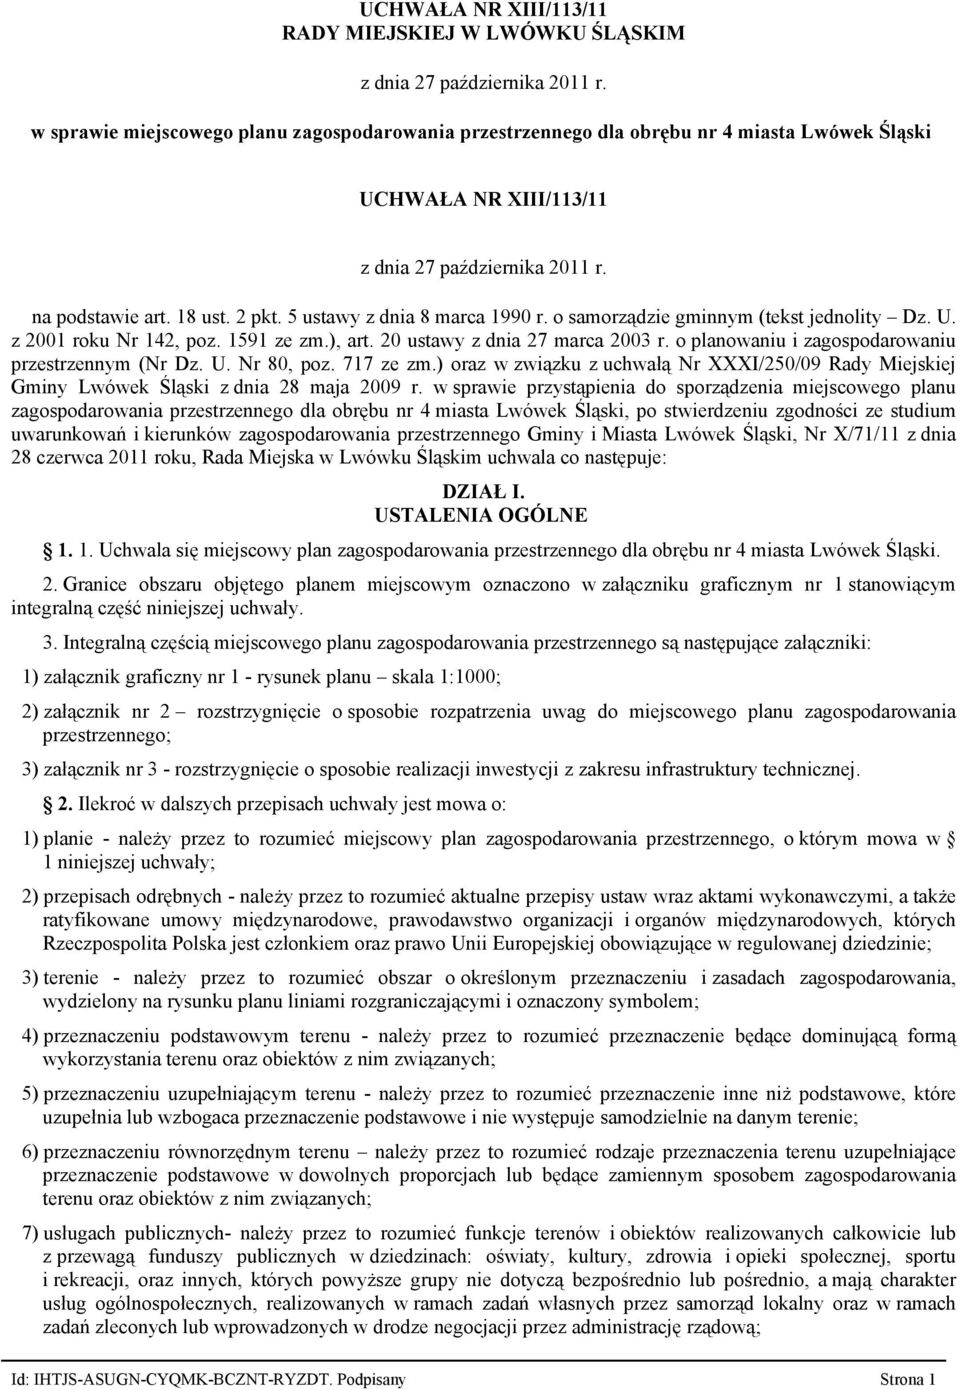 5 ustawy z dnia 8 marca 1990 r. o samorządzie gminnym (tekst jednolity Dz. U. z 2001 roku Nr 142, poz. 1591 ze zm.), art. 20 ustawy z dnia 27 marca 2003 r.